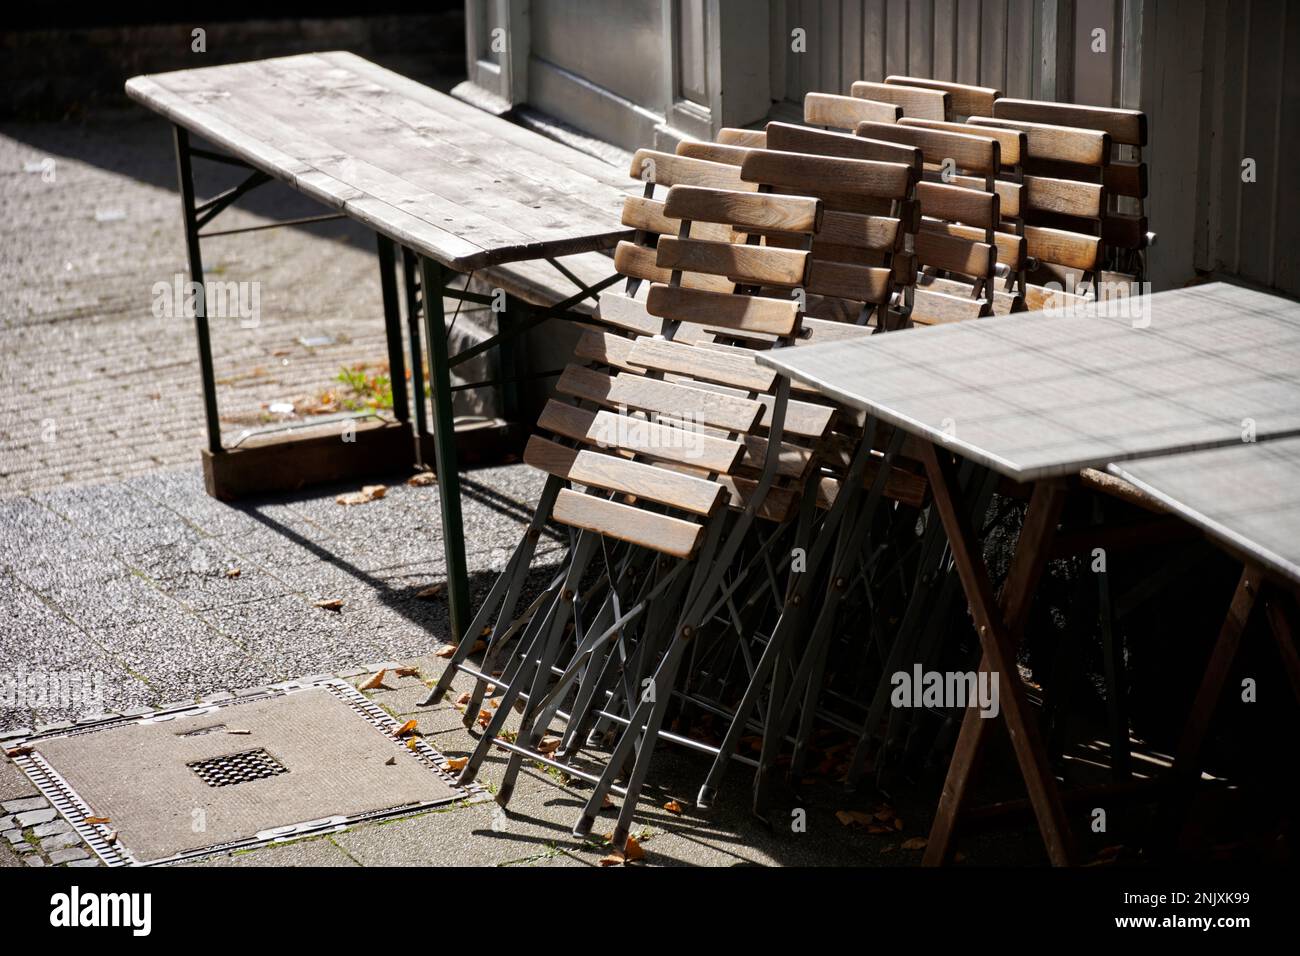 Zusammengeklapte Holzstühle im Aussengsastreubereich in der Altstadt Hattingen. Sie werden von der sonne beschienen. Banque D'Images